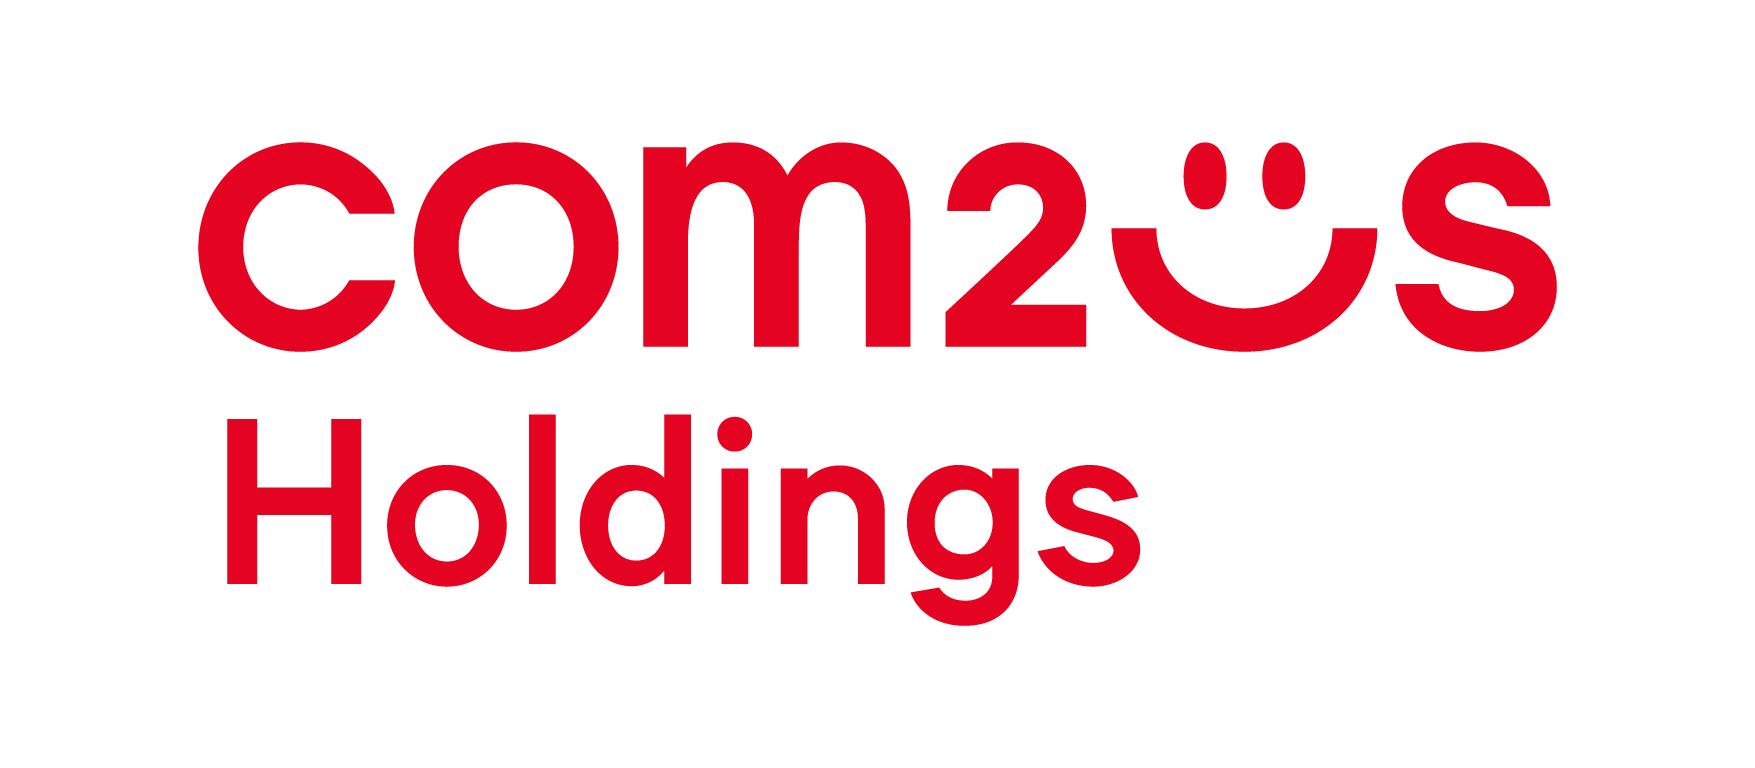 Gamevil đổi tên thành Com2us Holdings với tham vọng bành trướng thị trường NFT toàn cầu